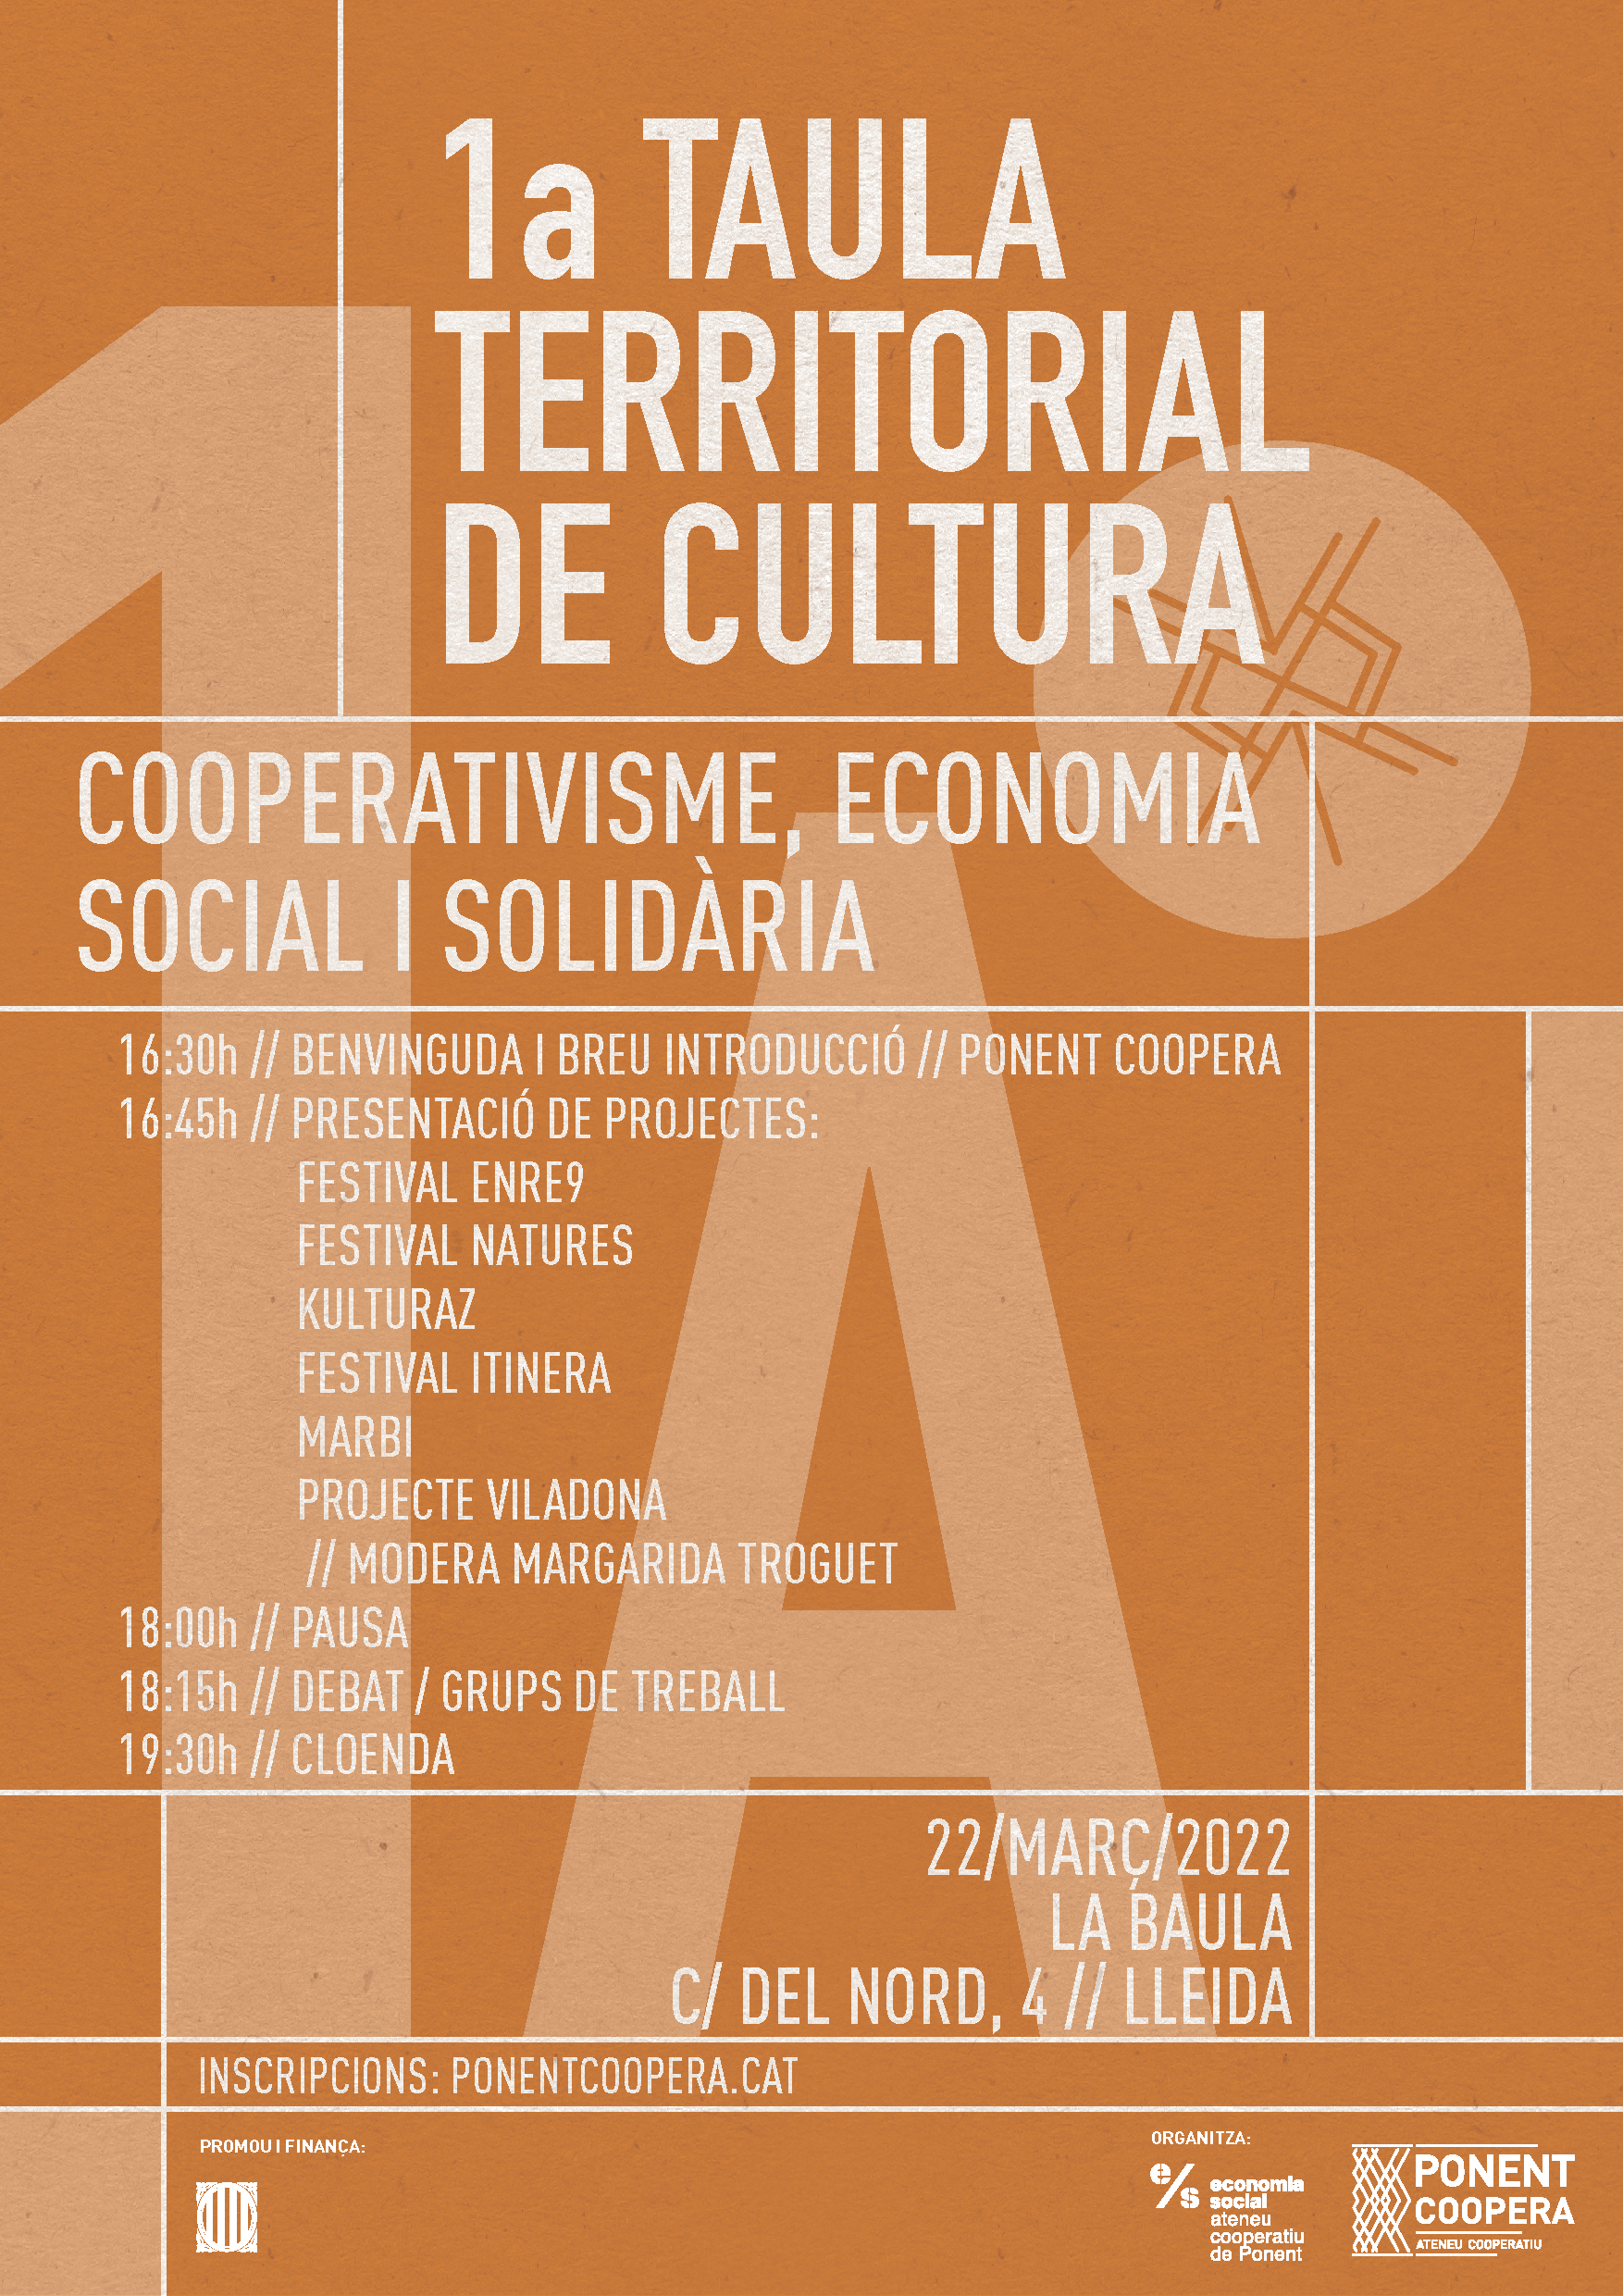 I Taula Territorial de Cultura: Cooperativisme, Economia Social i Solidària